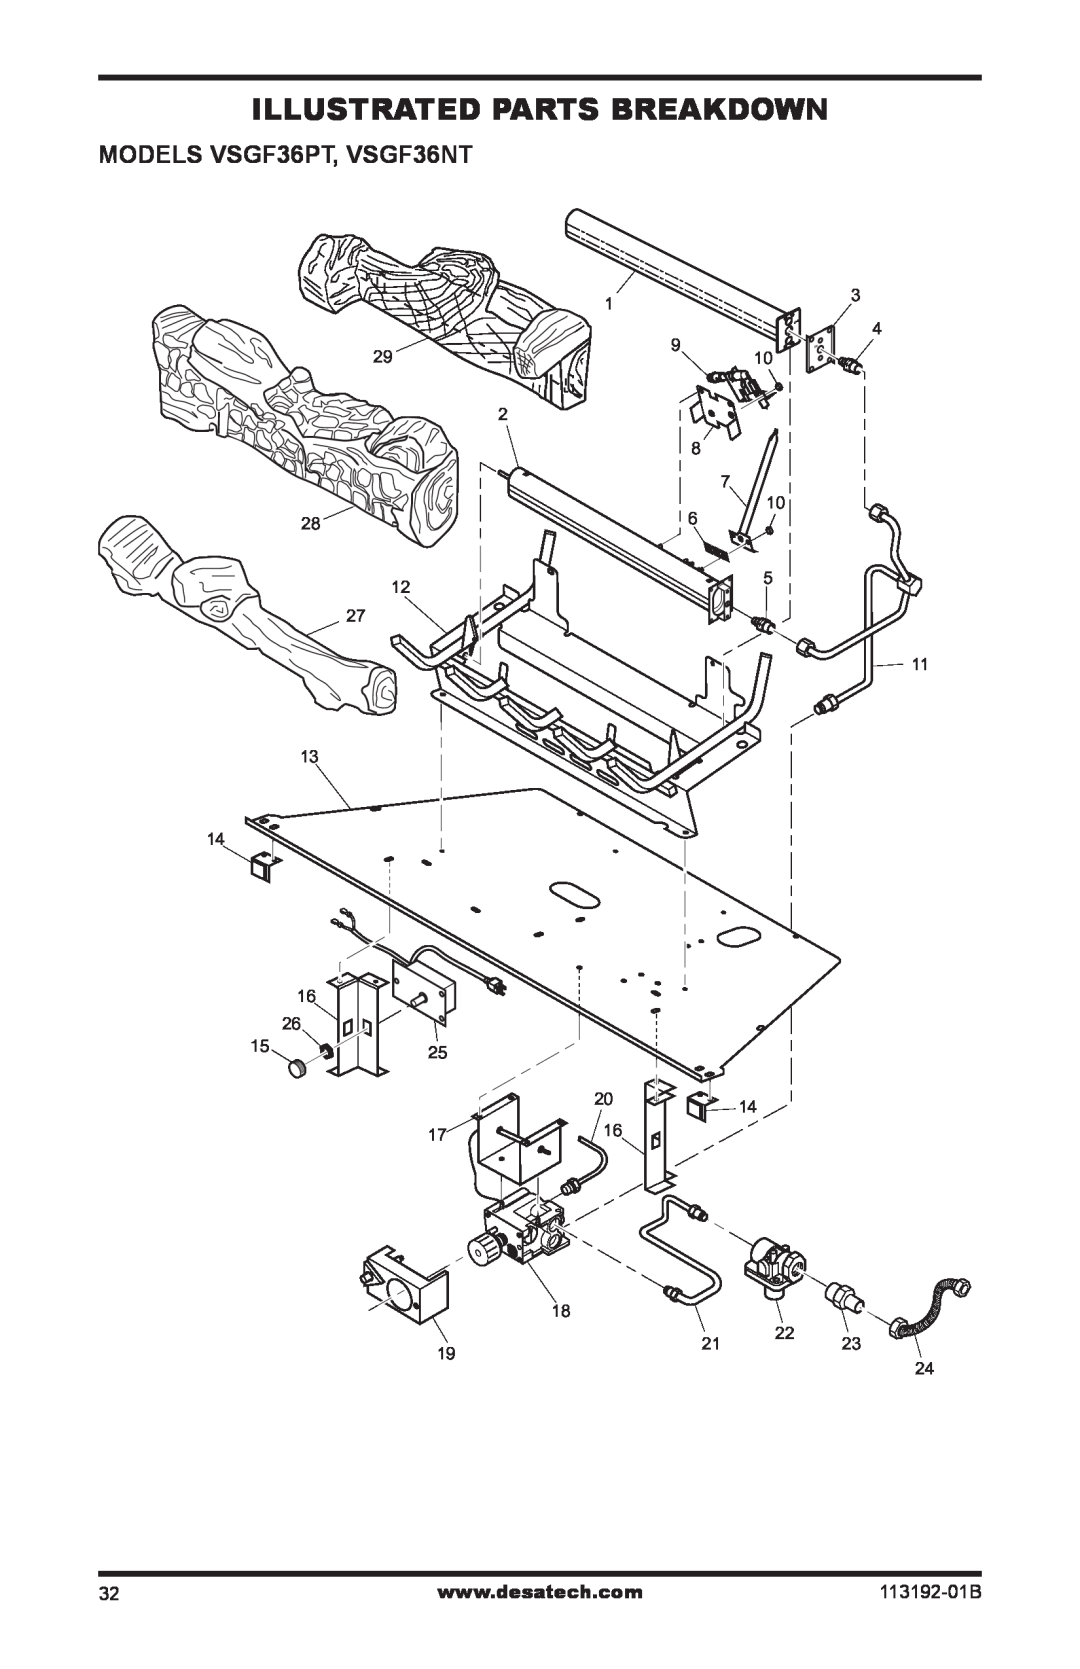 Desa VSGF36PR, VSGF36NR installation manual Illustrated Parts Breakdown, MODELS VSGF36PT, VSGF36NT, 113192-01B 